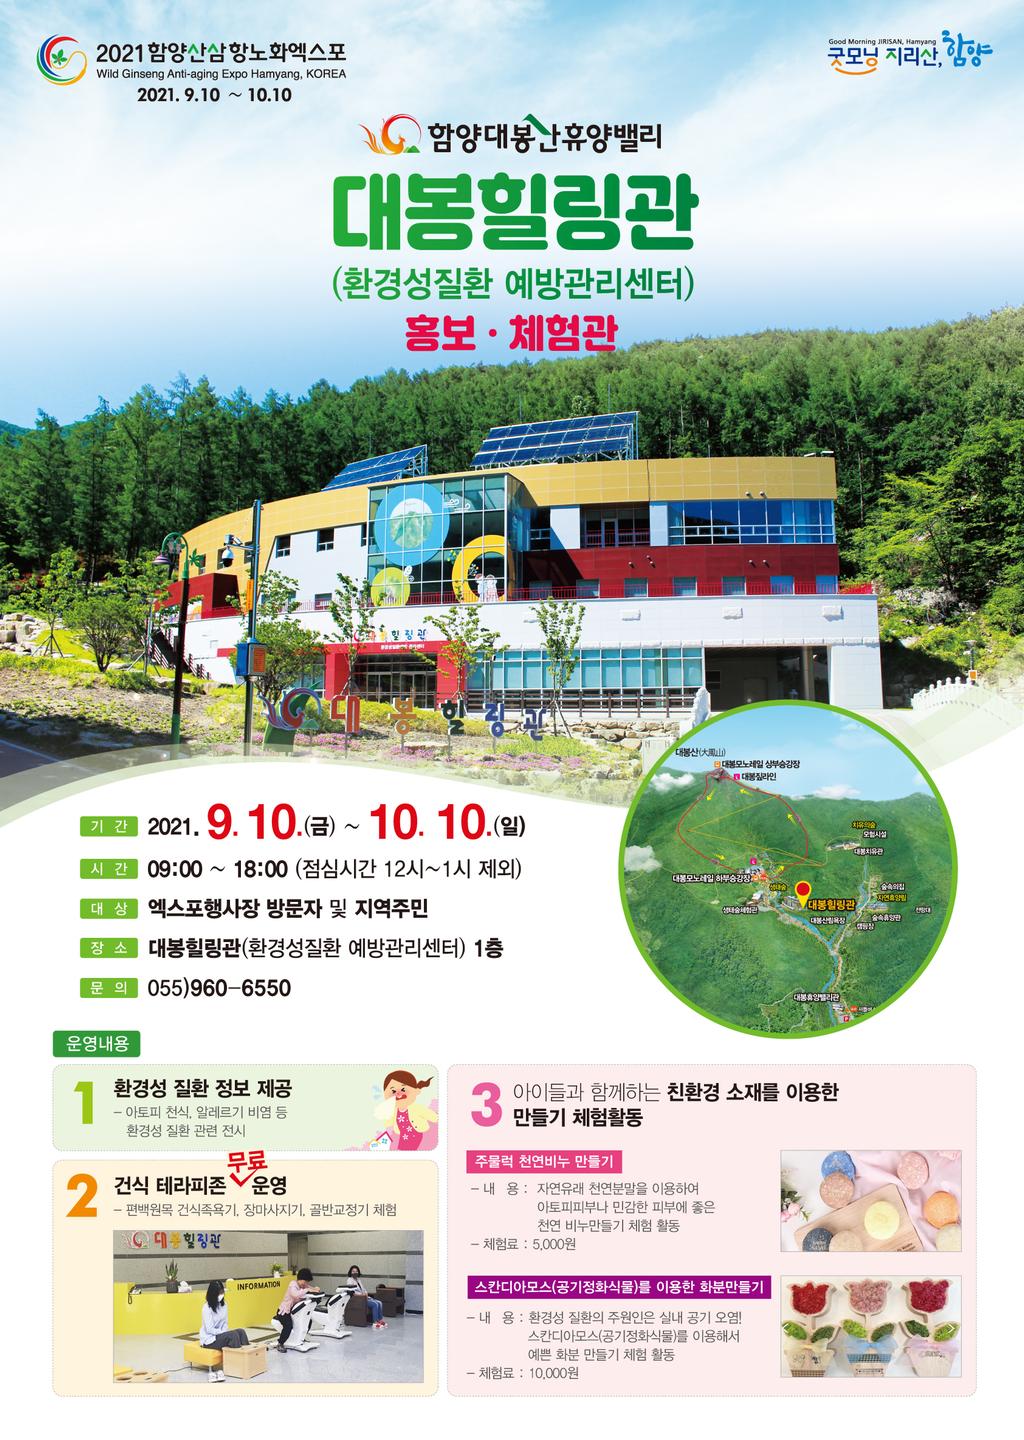 환경성질환 예방관리 센터 홍보관 안내문